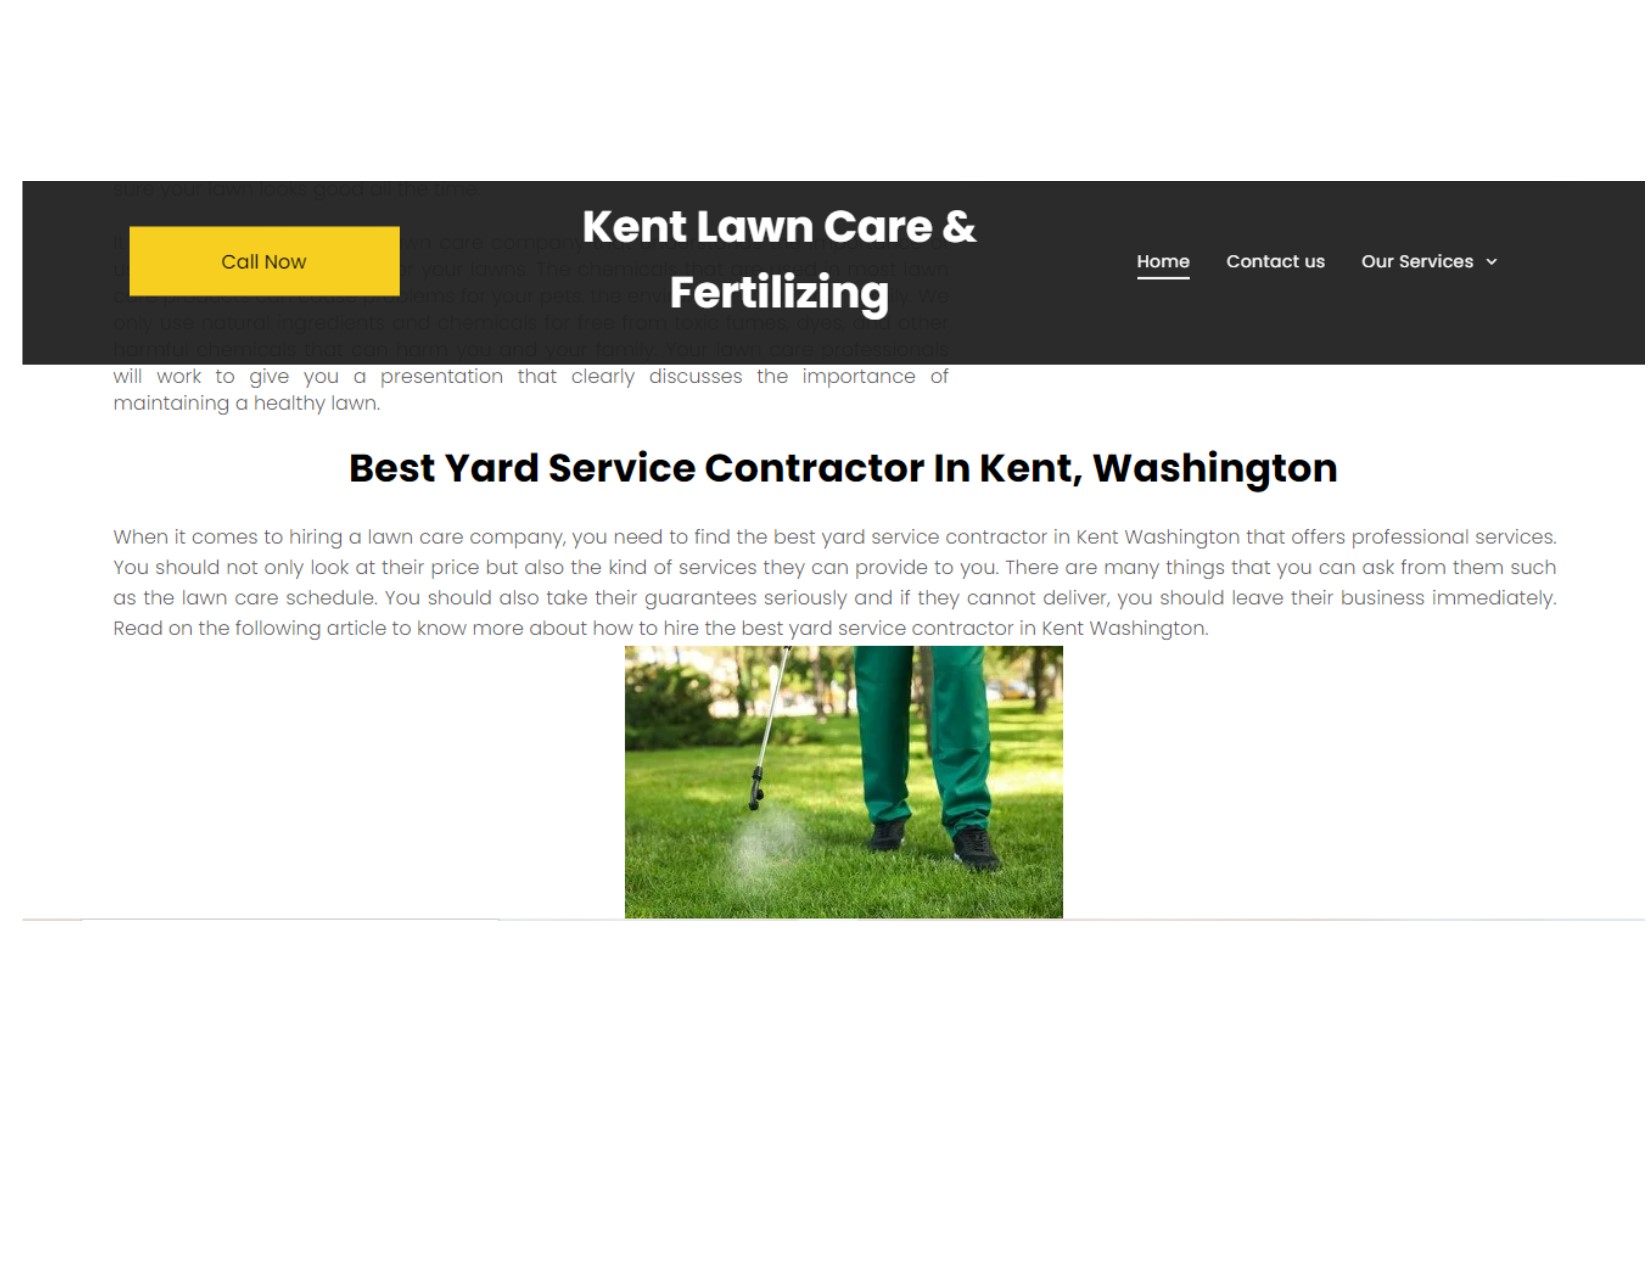 Kent Lawn Care & Fertilizing